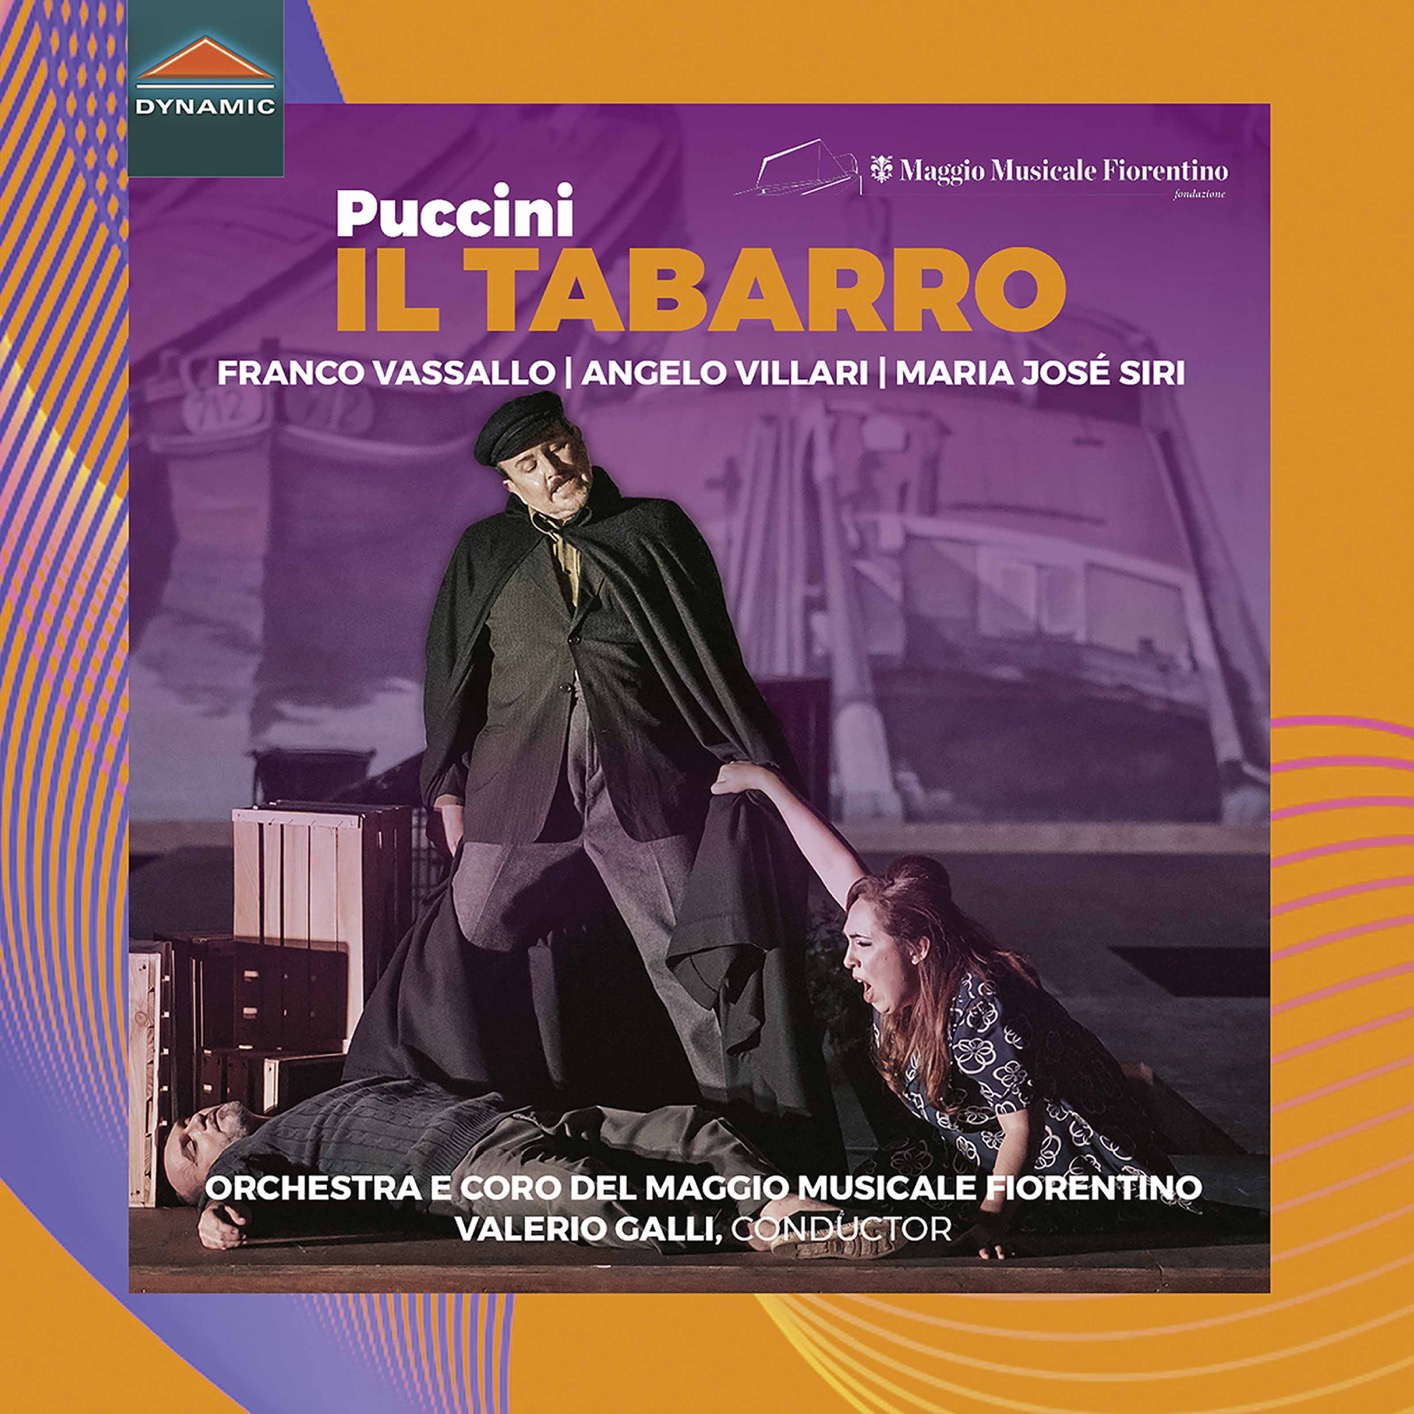 Franco Vassallo, Angelo Villari, María Jose Siri - Puccini - Il tabarro, SC 85 (Live) (2020) [FLAC 24bit/96kHz]